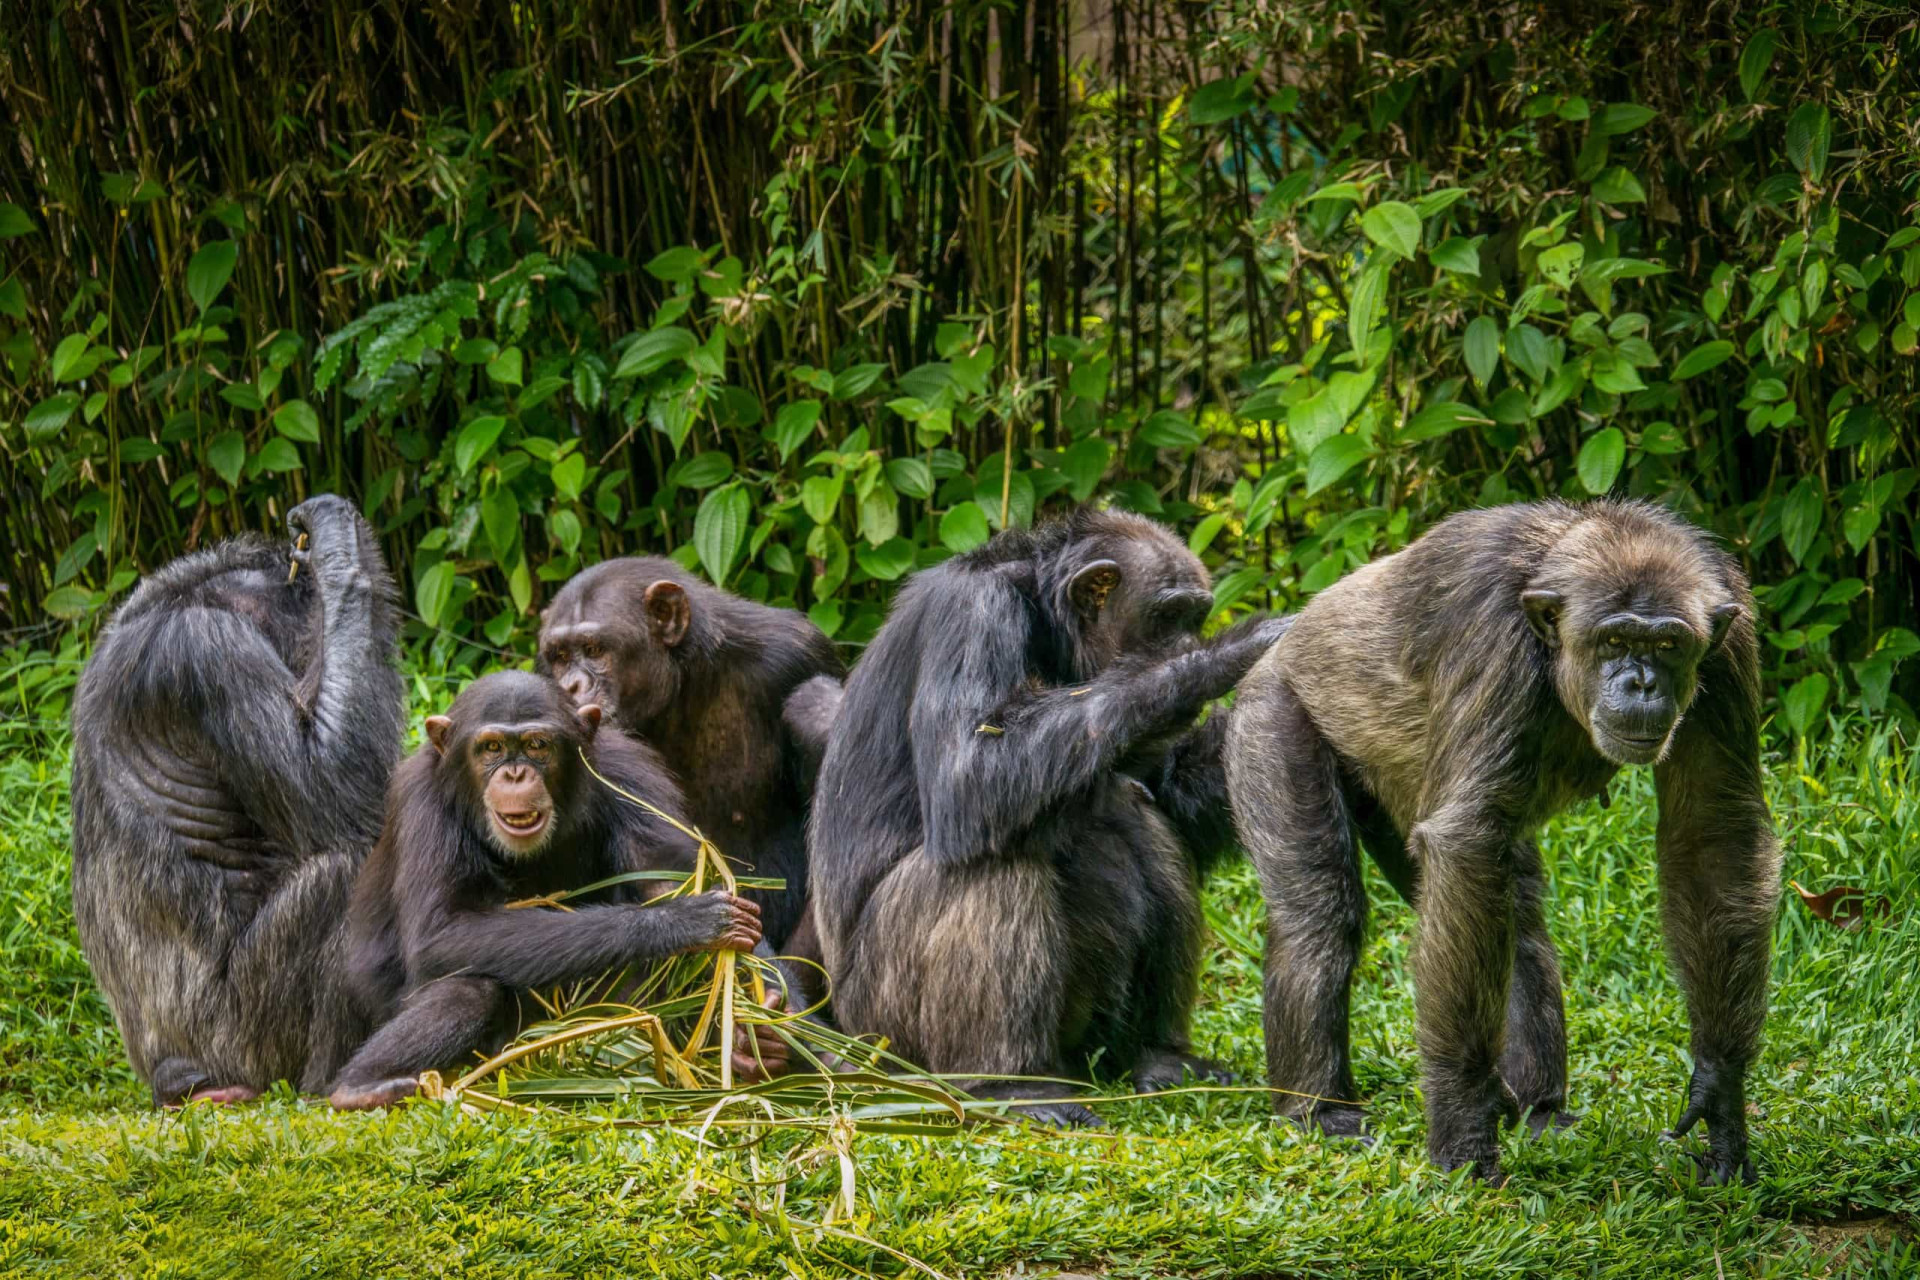 <p>Les chimpanzés aiment généralement faire leur toilette et celle des autres. Ils peuvent être très spécifiques à propos de l'endroit où ils ont besoin d'être nettoyés, et se le communiquent directement entre eux.</p><p><a href="https://www.msn.com/fr-fr/community/channel/vid-7xx8mnucu55yw63we9va2gwr7uihbxwc68fxqp25x6tg4ftibpra?cvid=94631541bc0f4f89bfd59158d696ad7e">Suivez-nous et accédez tous les jours à du contenu exclusif</a></p>